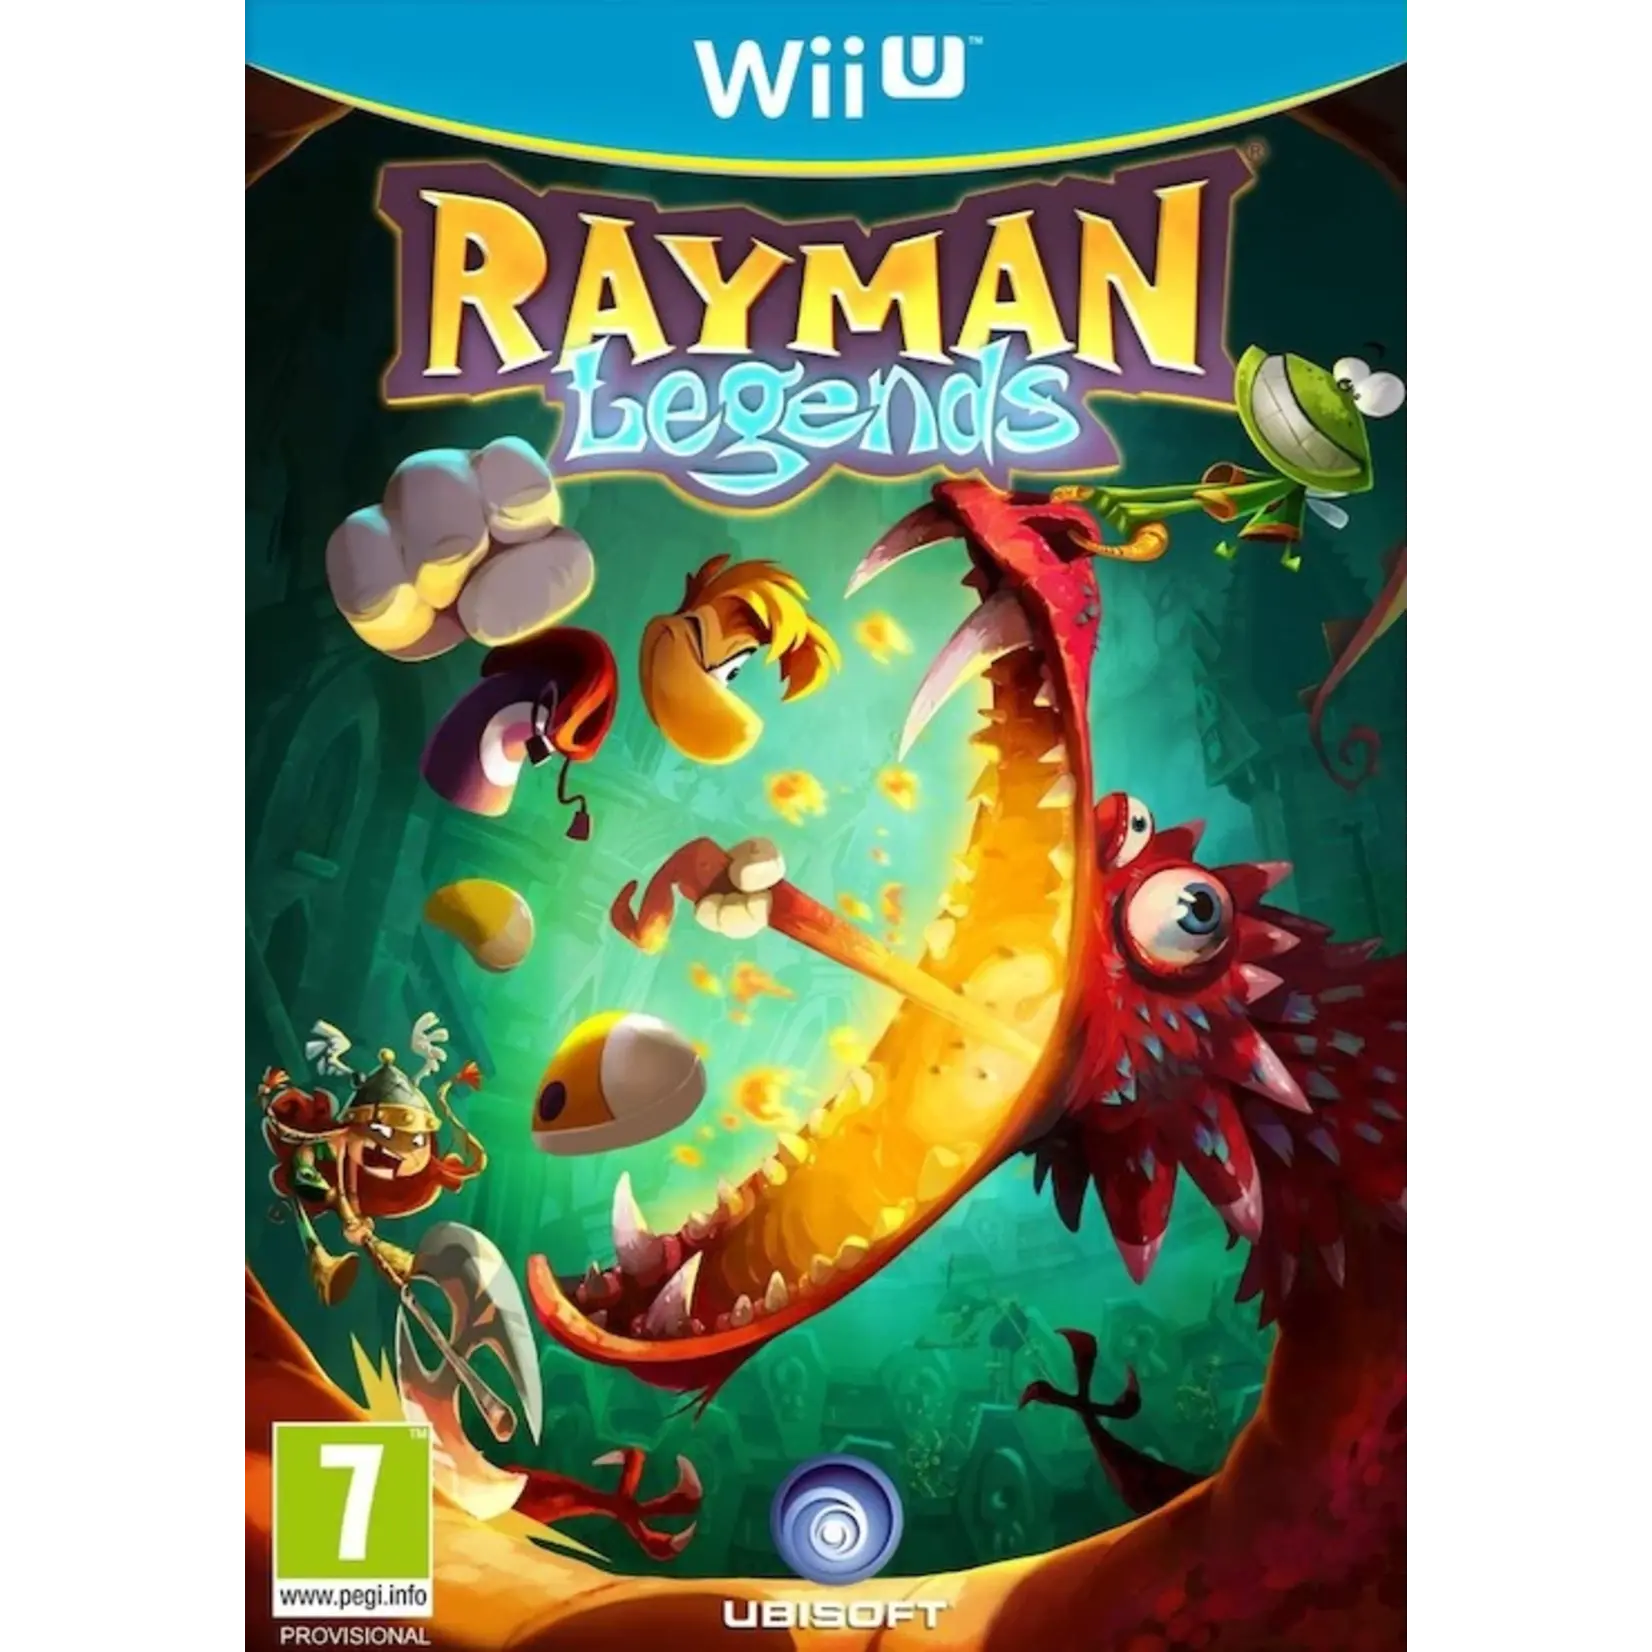 Rayman legends wiiu